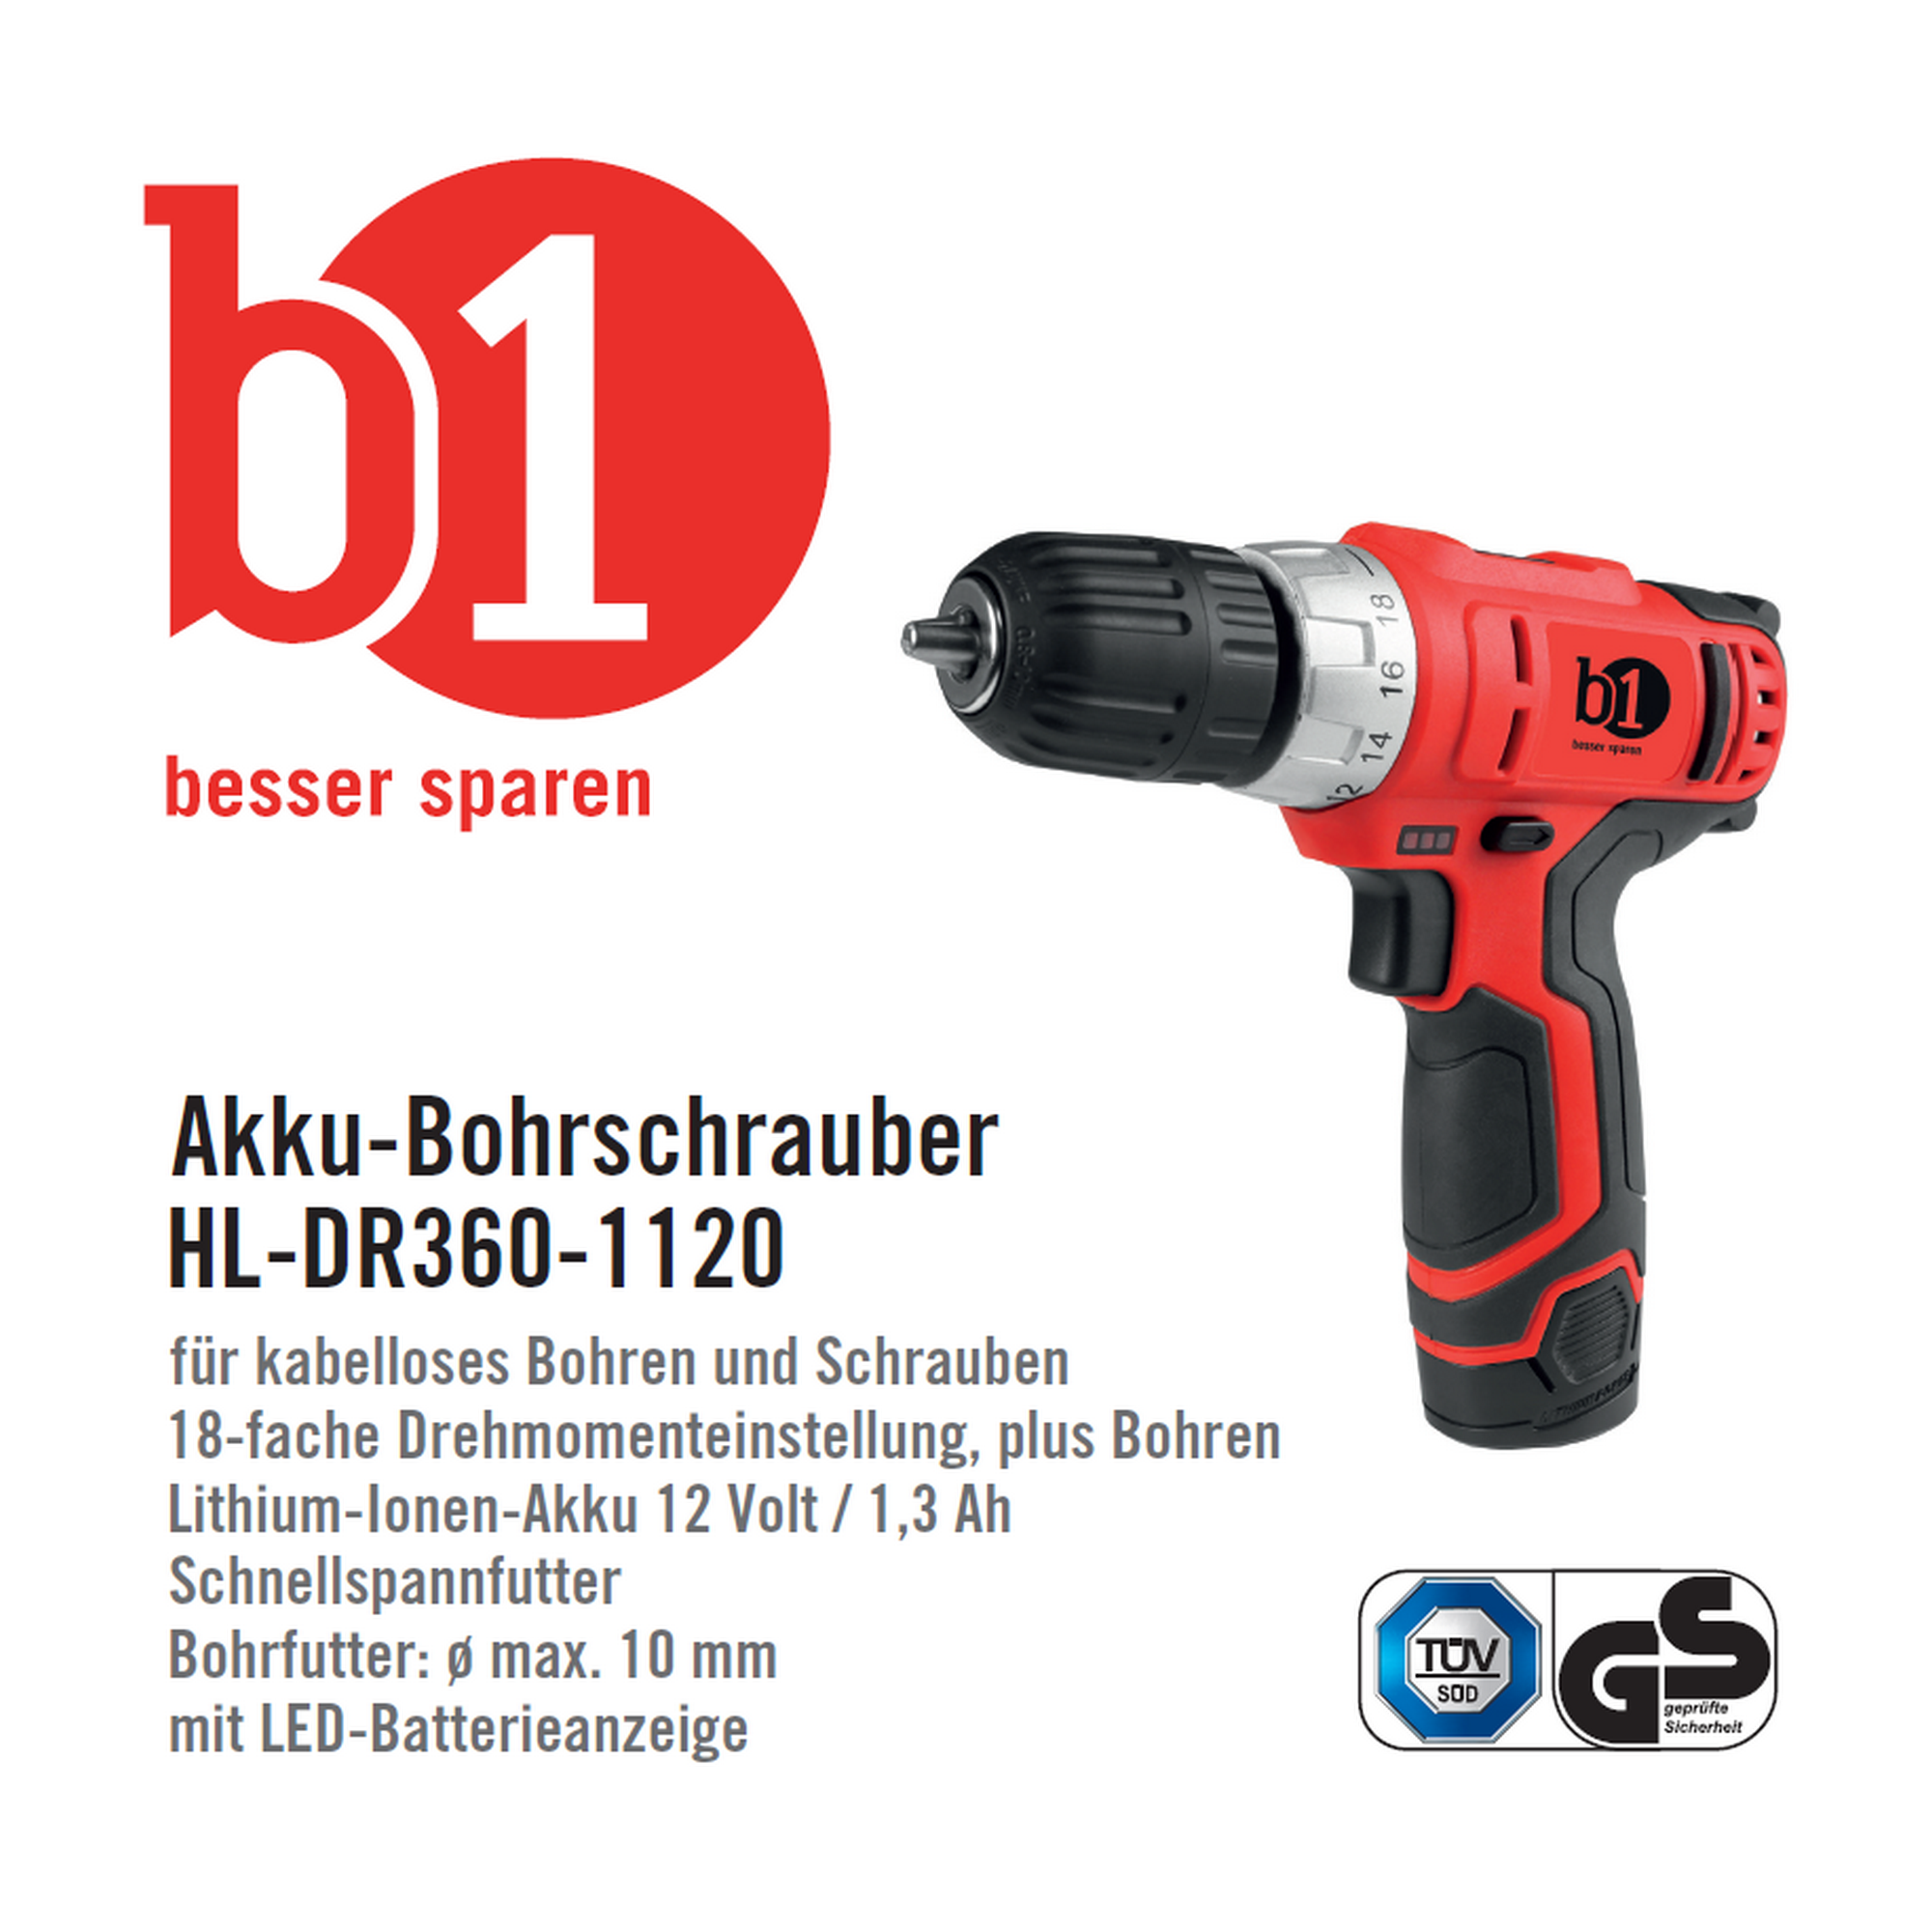 Akku-Bohrschrauber 'HL-DR360-1120' 12 V + product picture